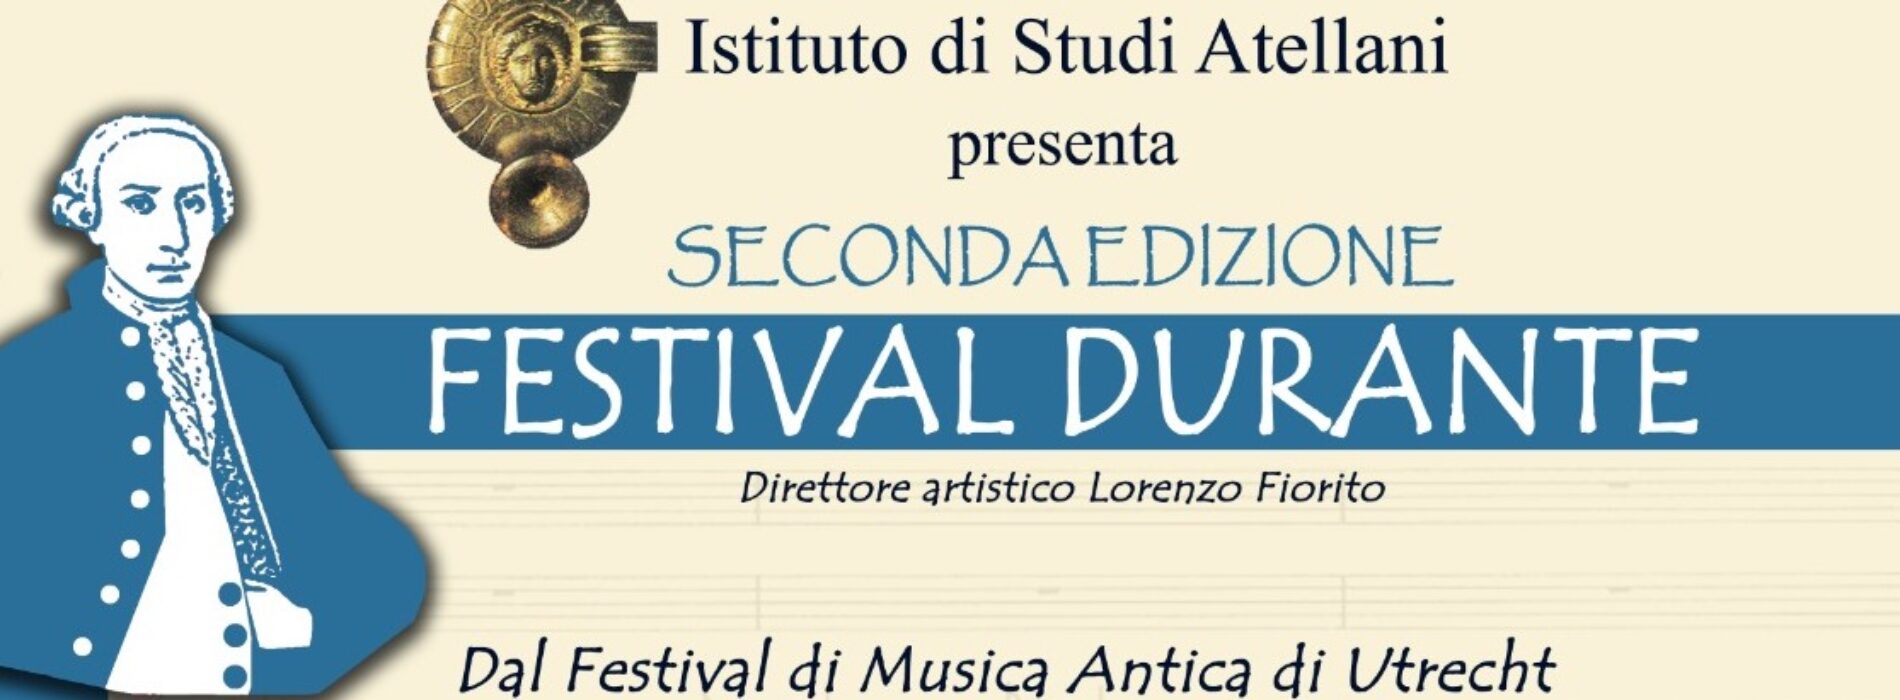 Festival Durante. Requiem in do minore, diretta streaming